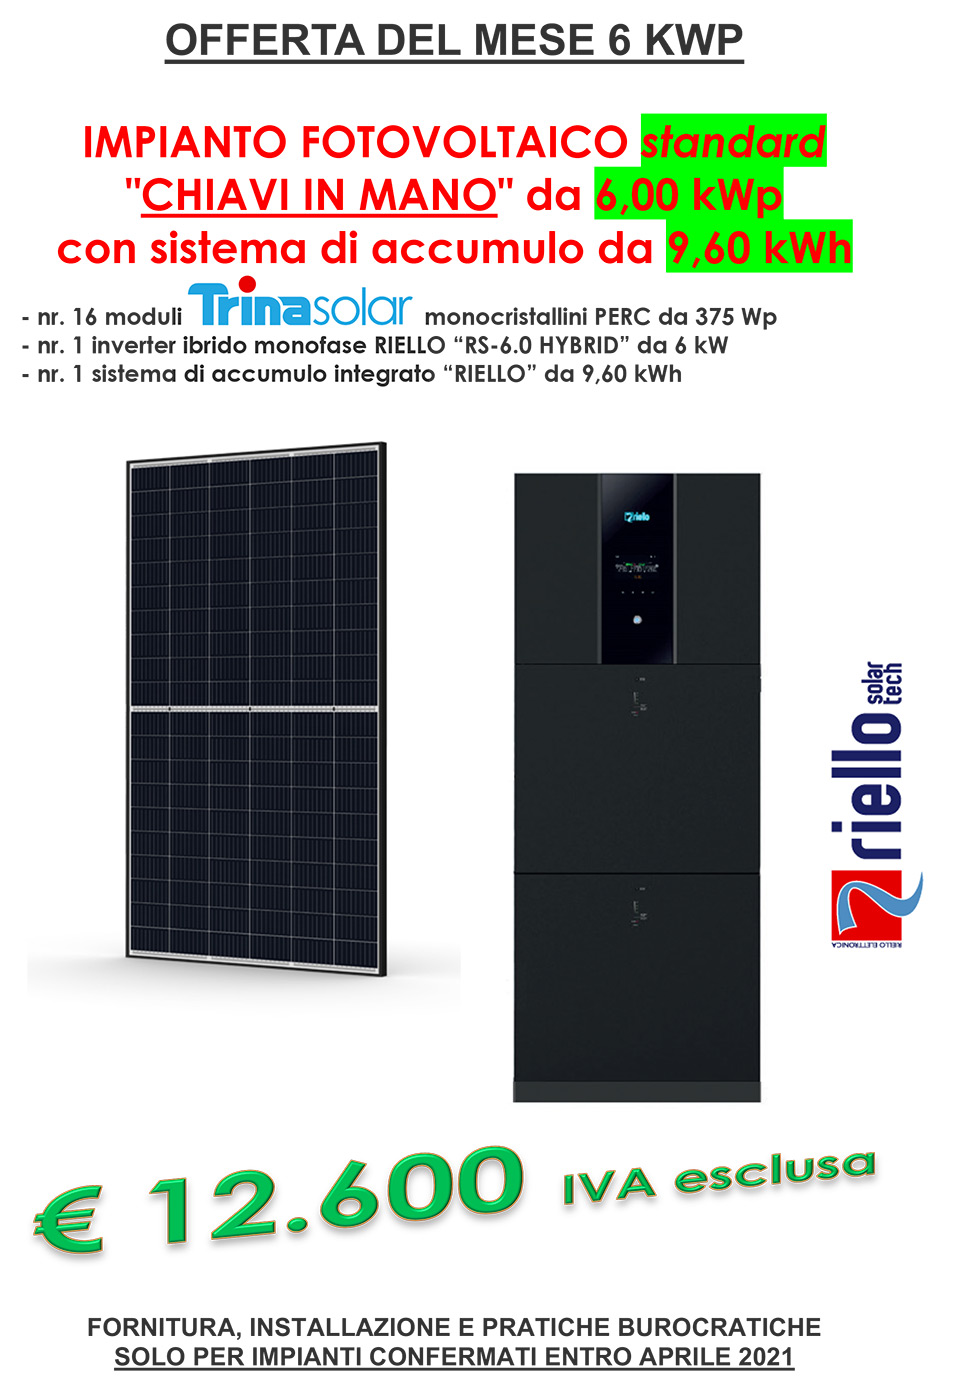 Offerta del mese - Fotovoltaico